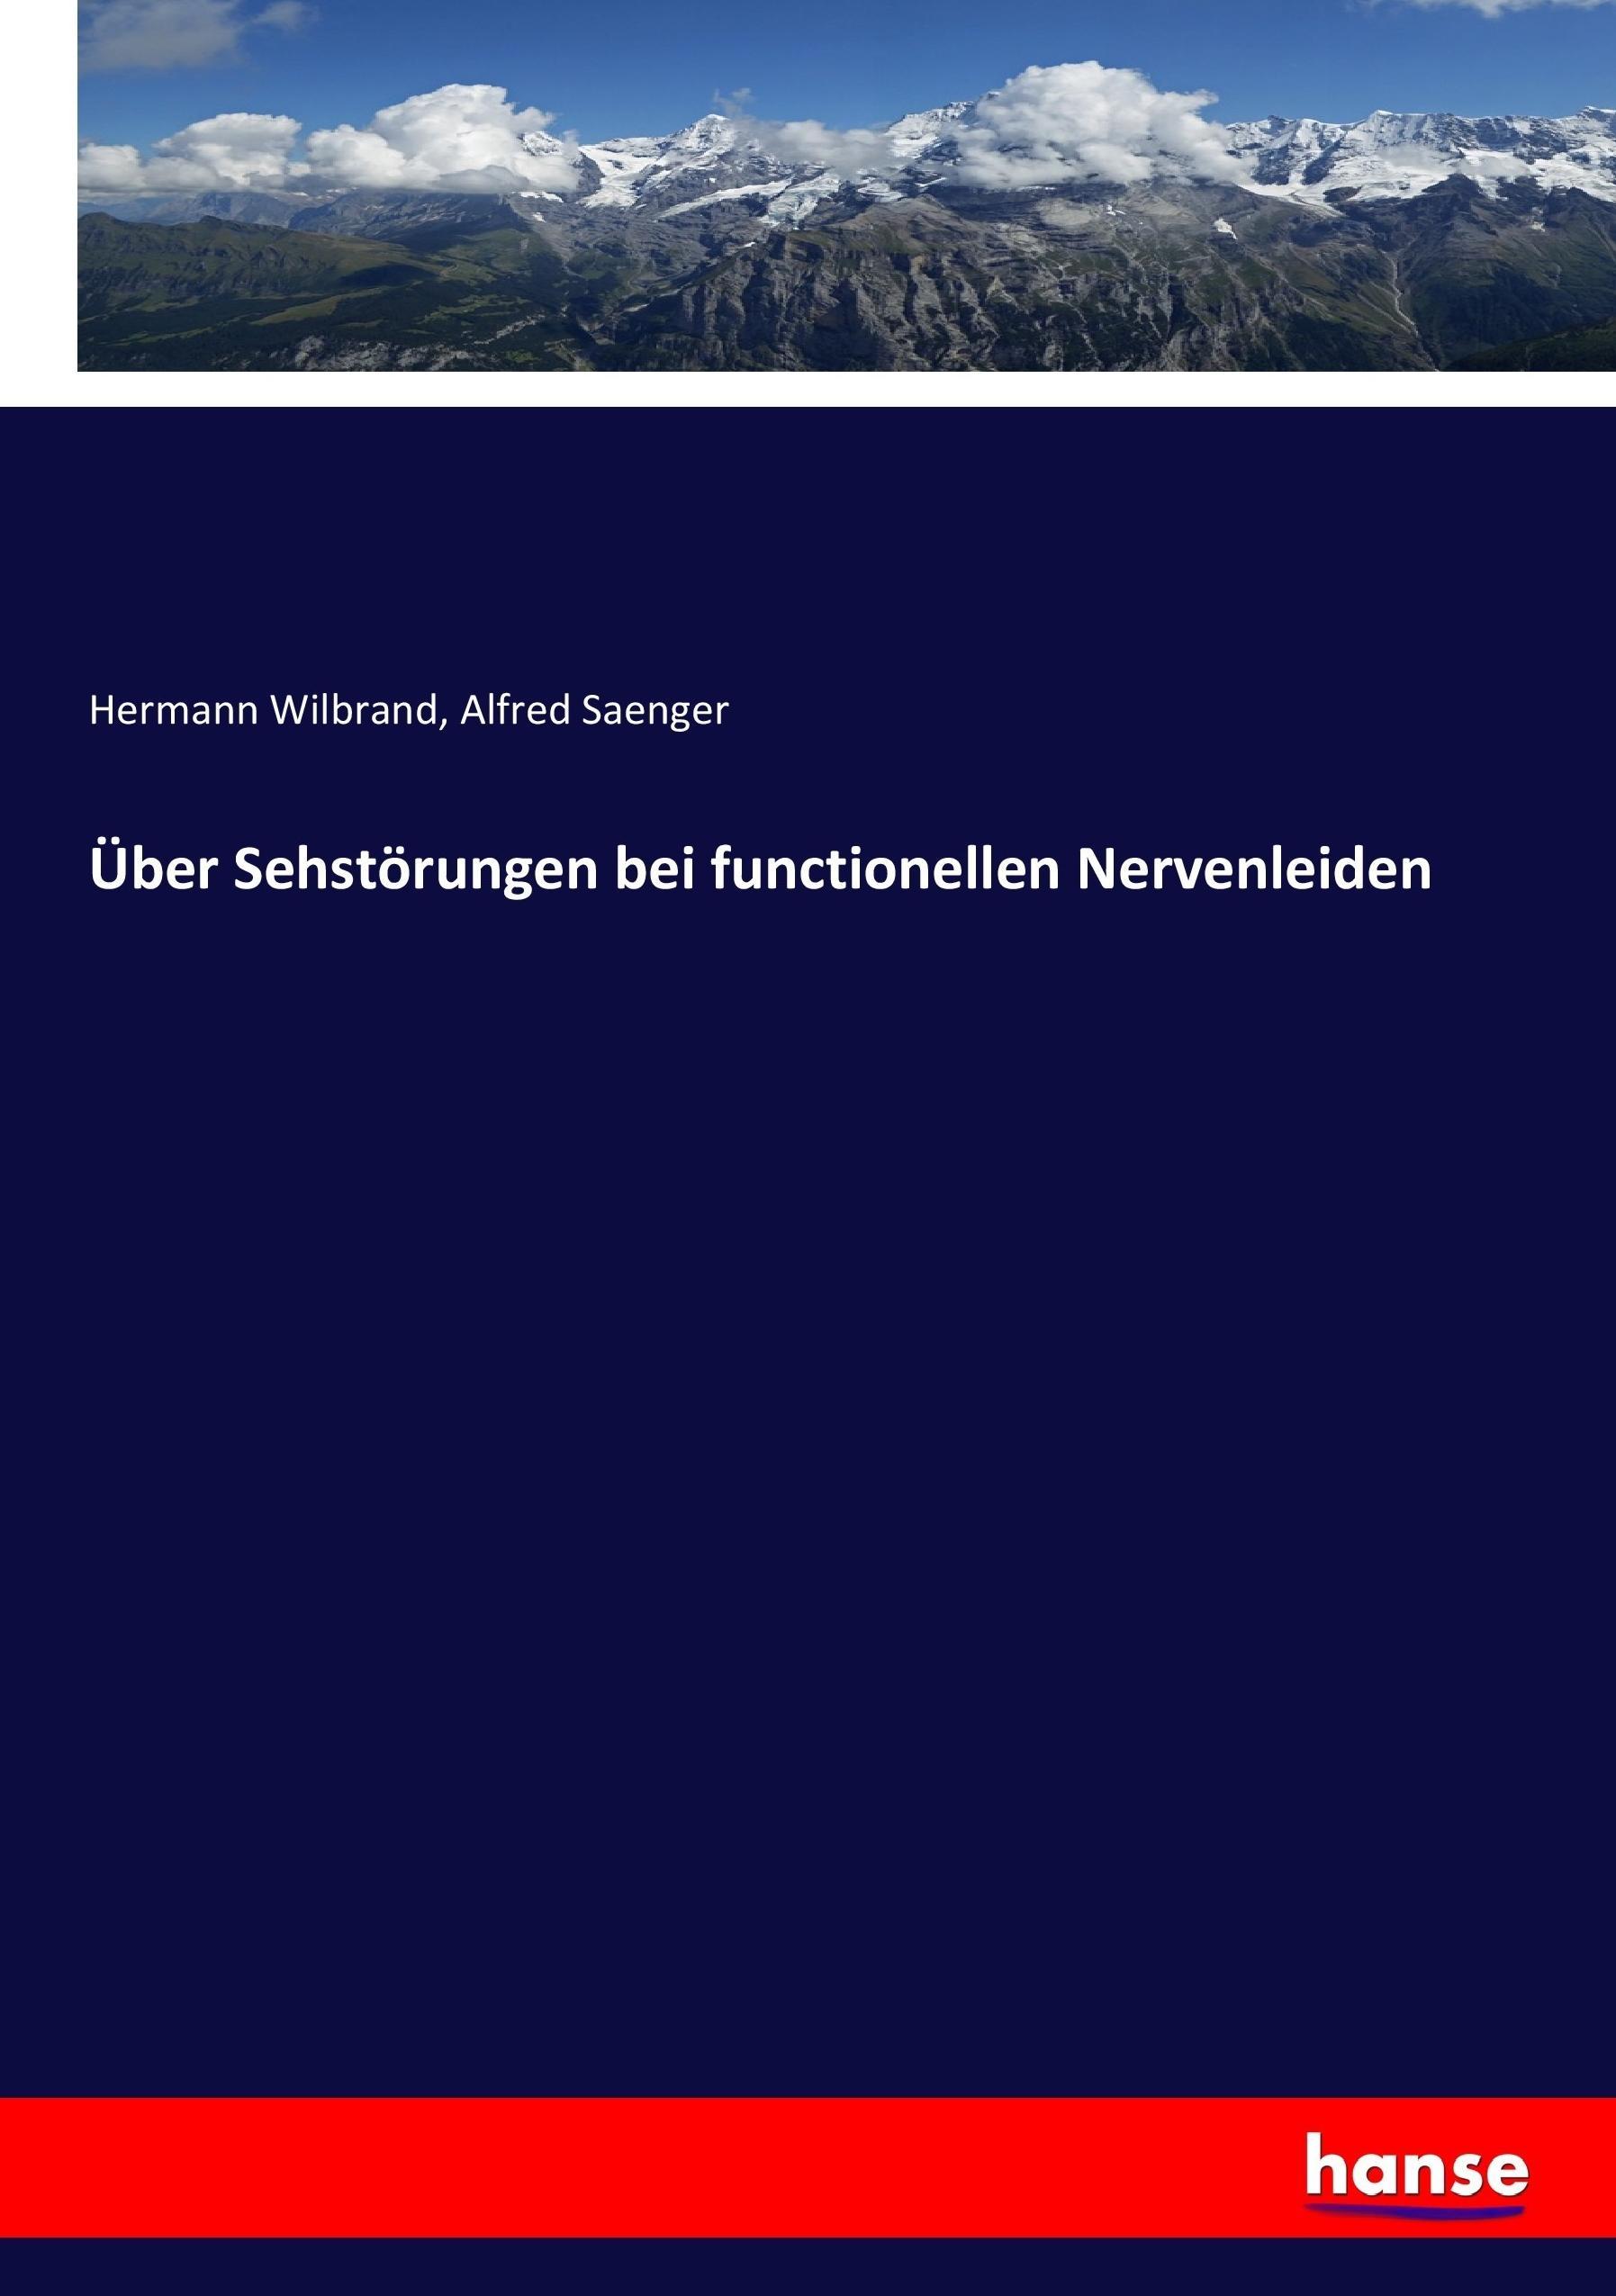 Ueber Sehstoerungen bei functionellen Nervenleiden - Wilbrand, Hermann Saenger, Alfred